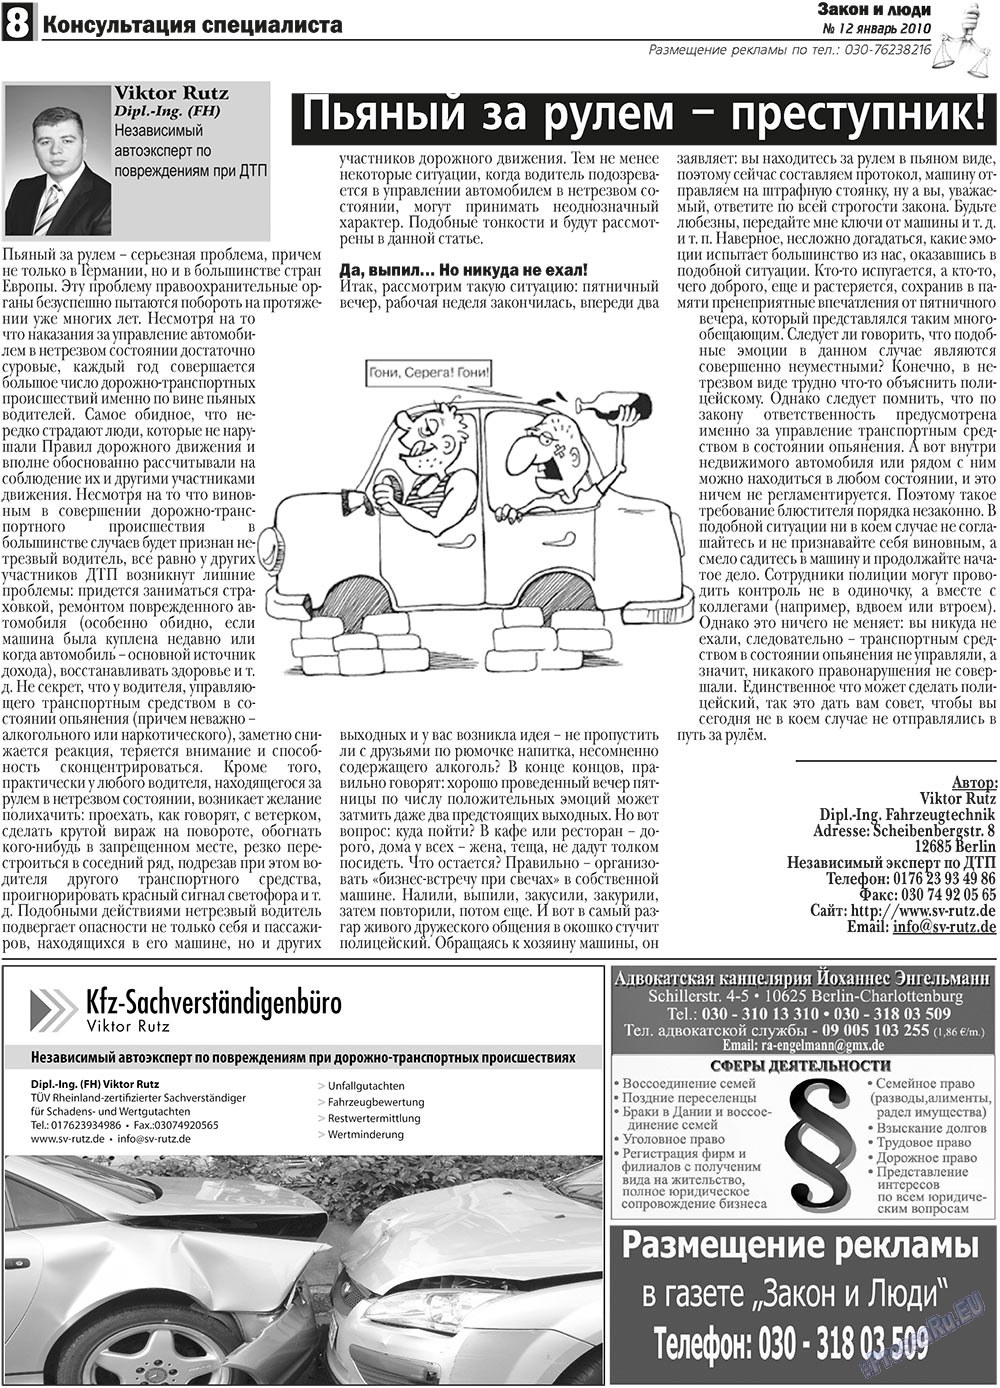 Закон и люди, газета. 2011 №1 стр.8